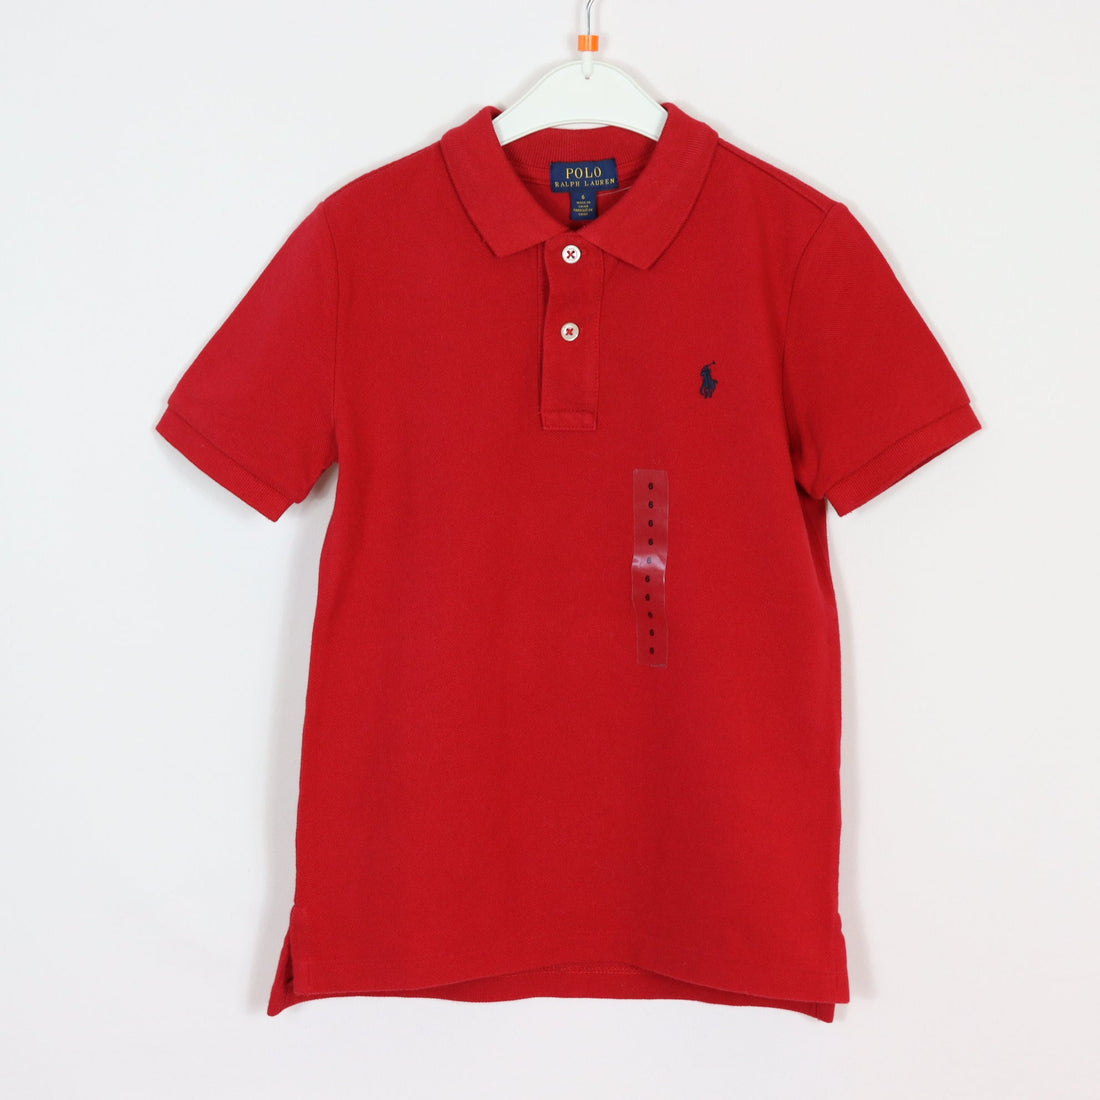 T-Shirt - Polo Ralph Lauren - 116 - Rot - Sehr guter Zustand